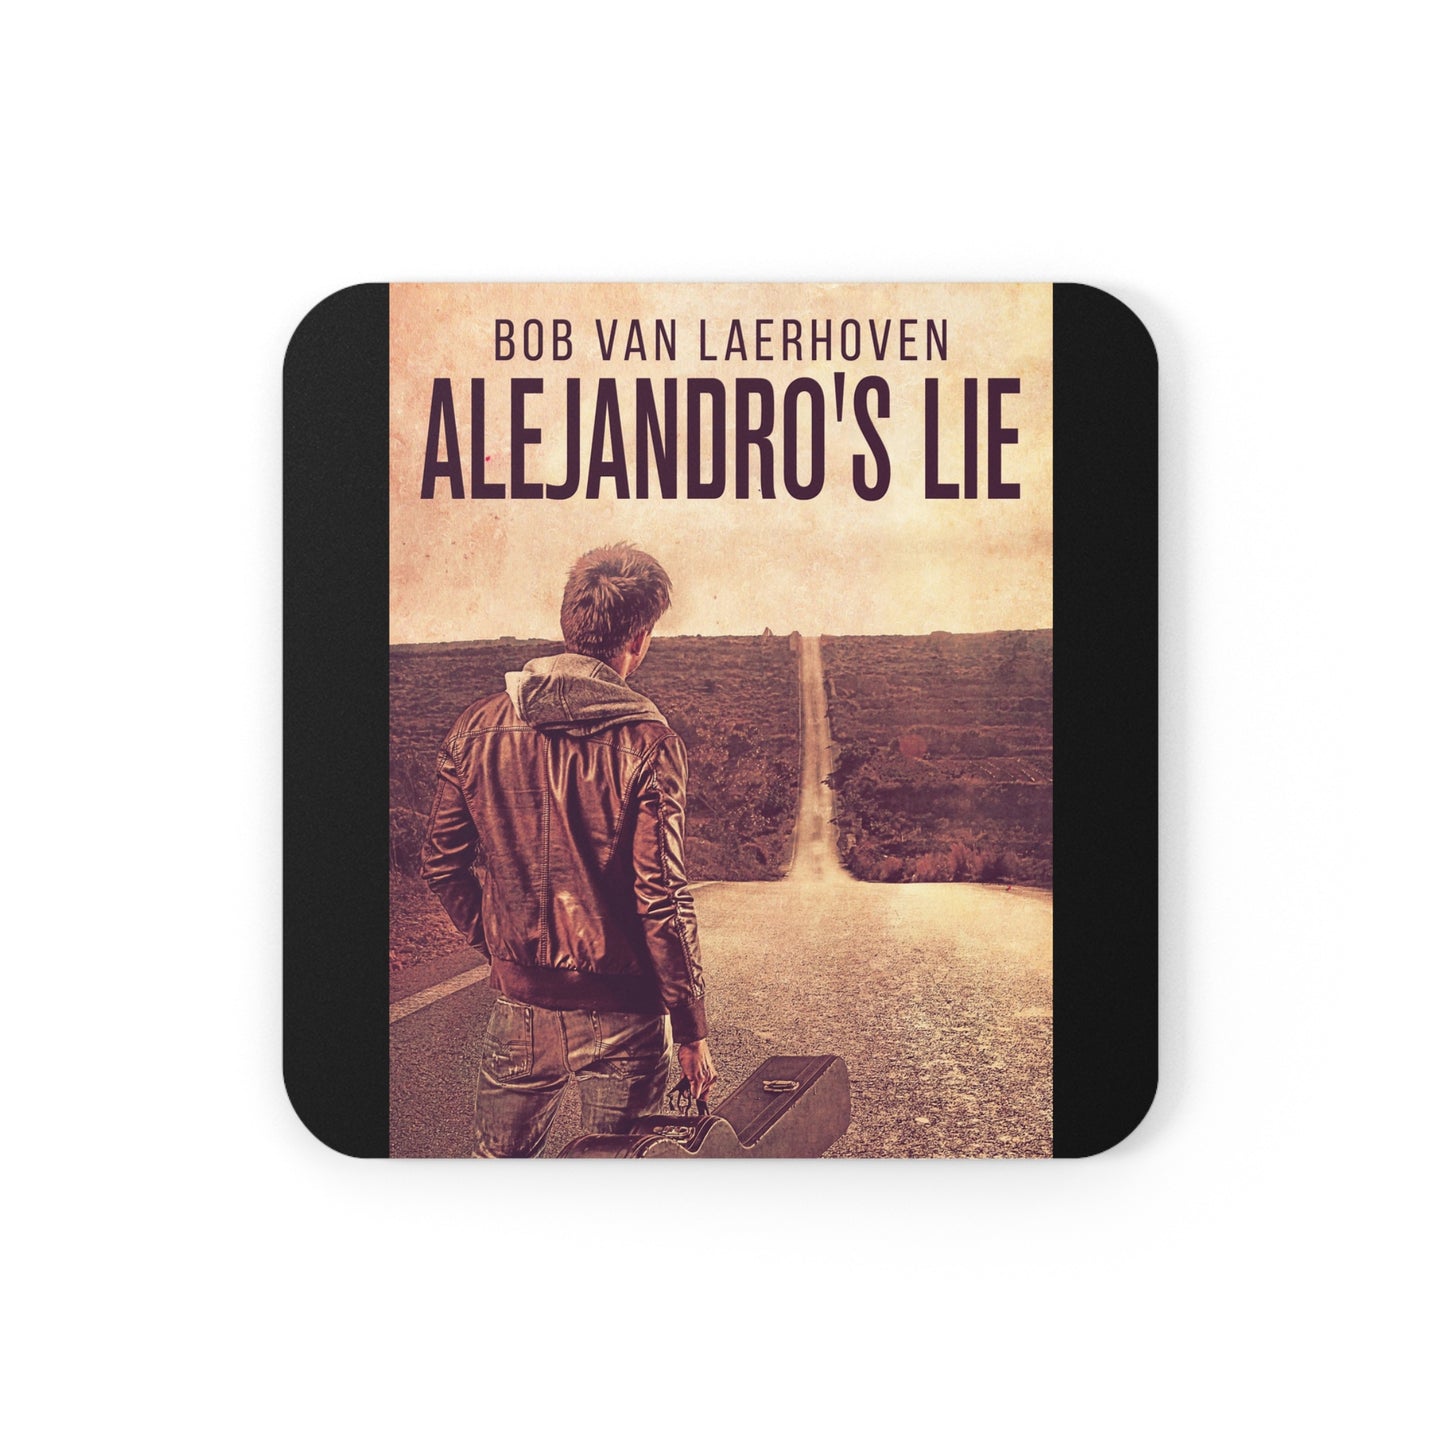 Alejandro’s Lie - Corkwood Coaster Set